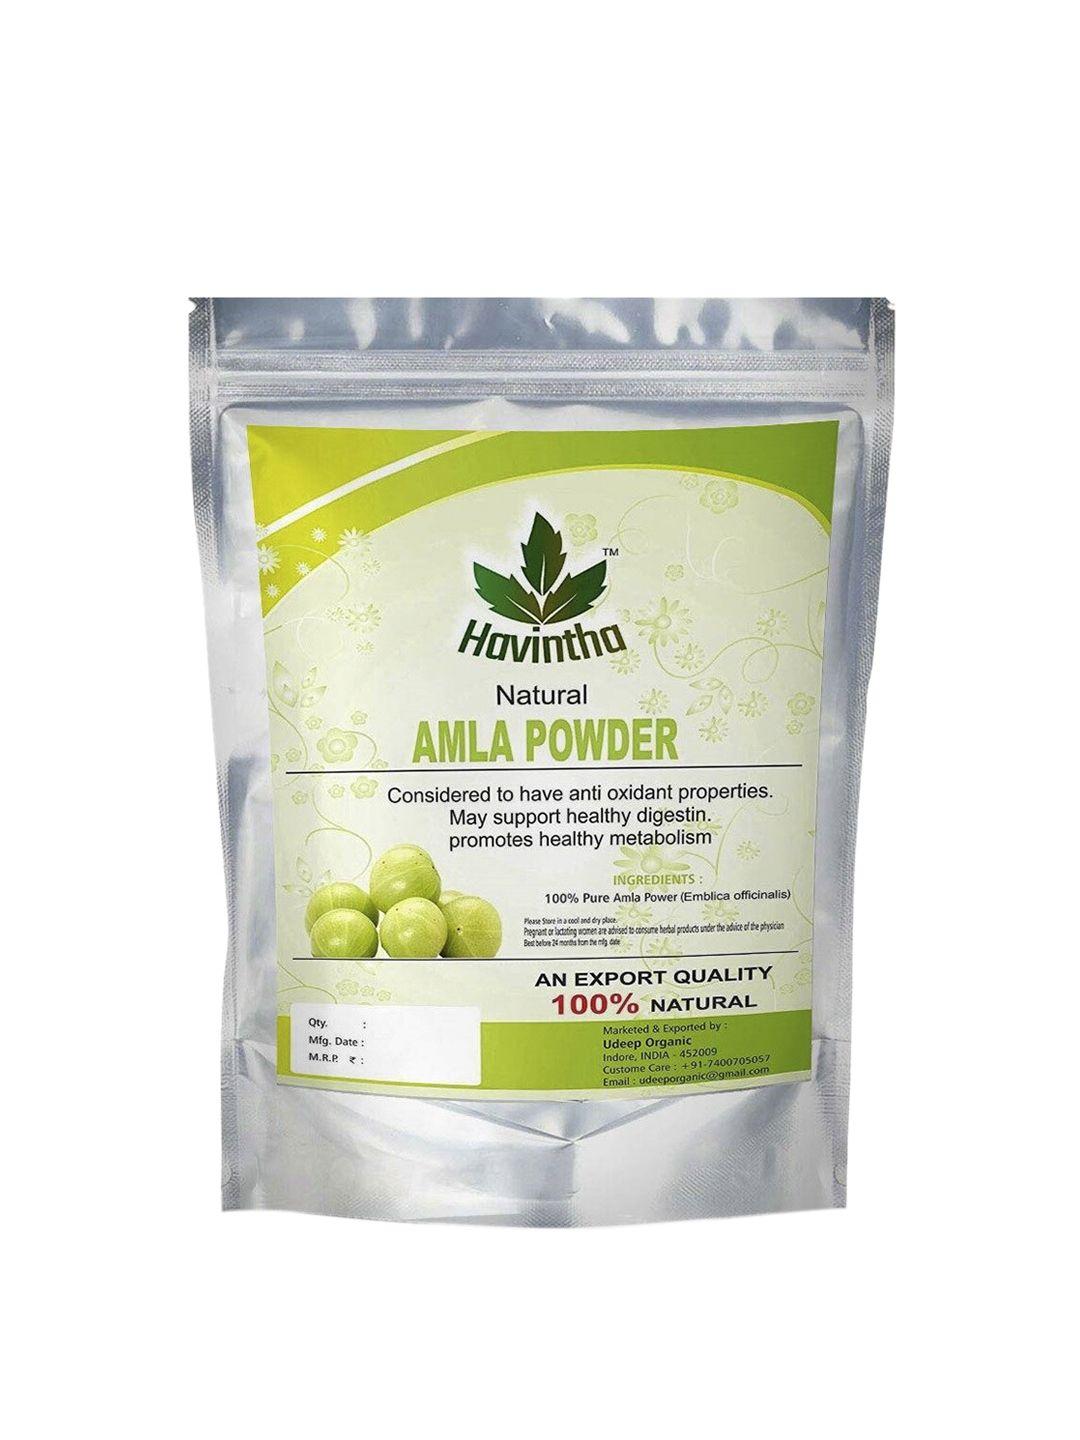 havintha amla powder for hair growth 227 gm